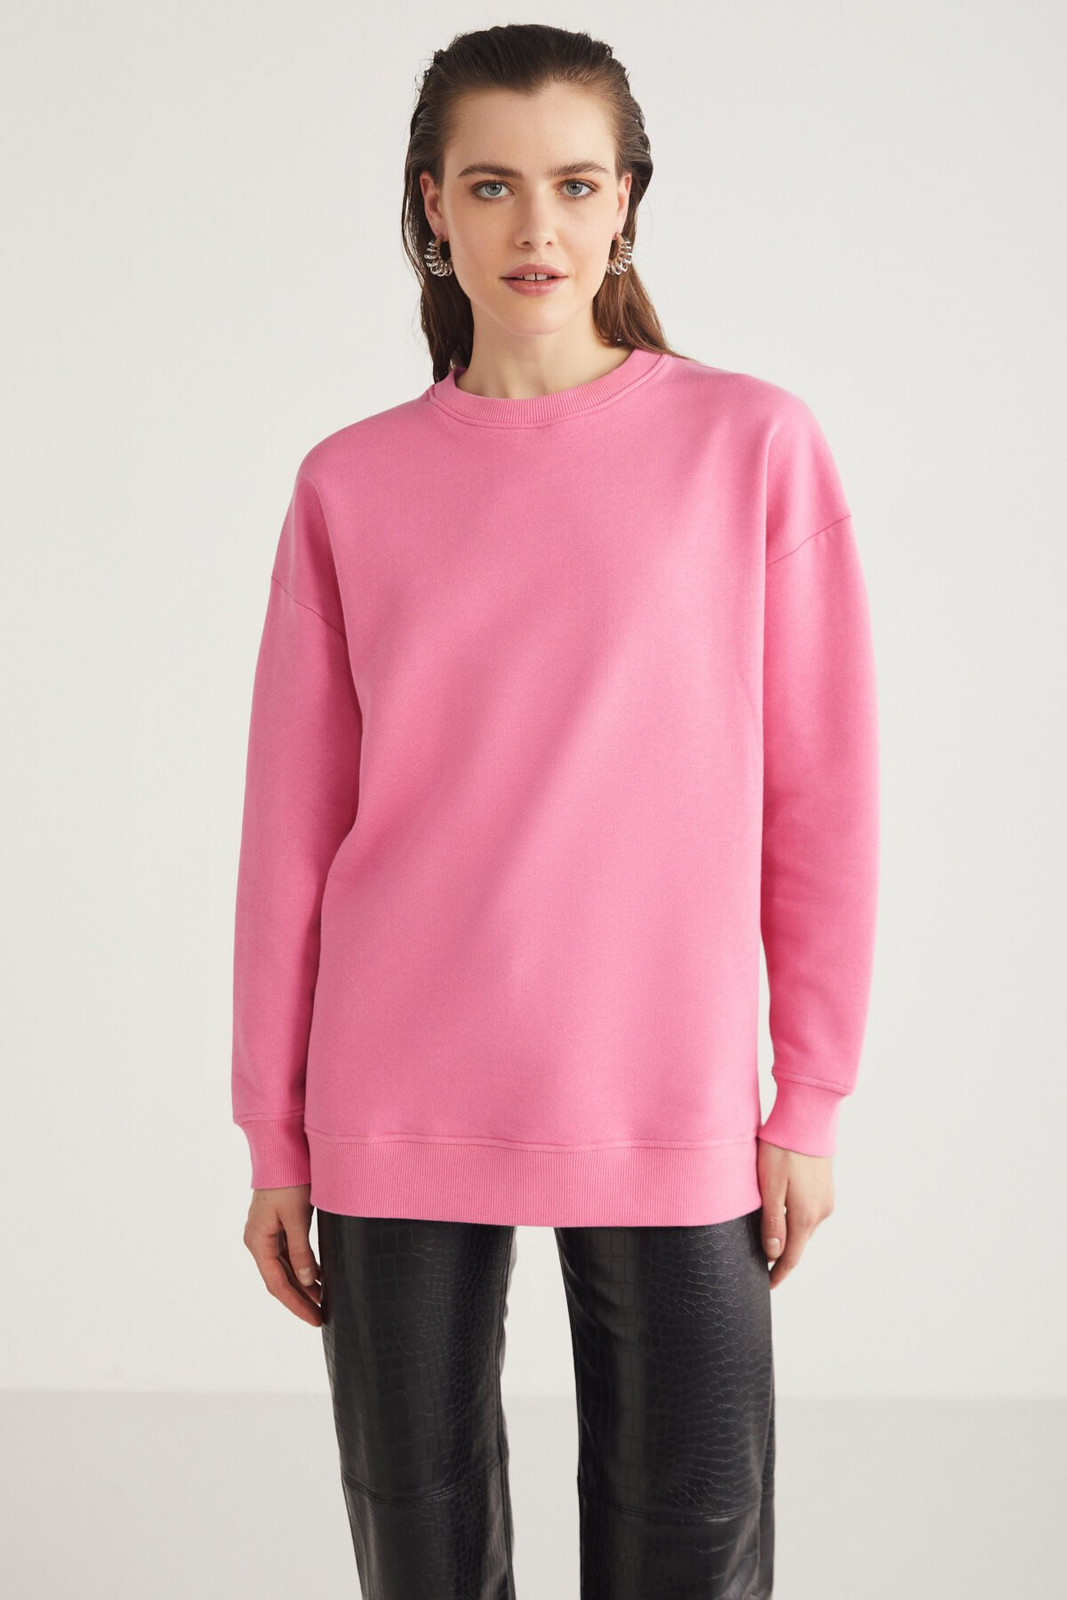 GRIMELANGE Allys Women's Crew Neck Oversize Basic Pink Sweatshirt